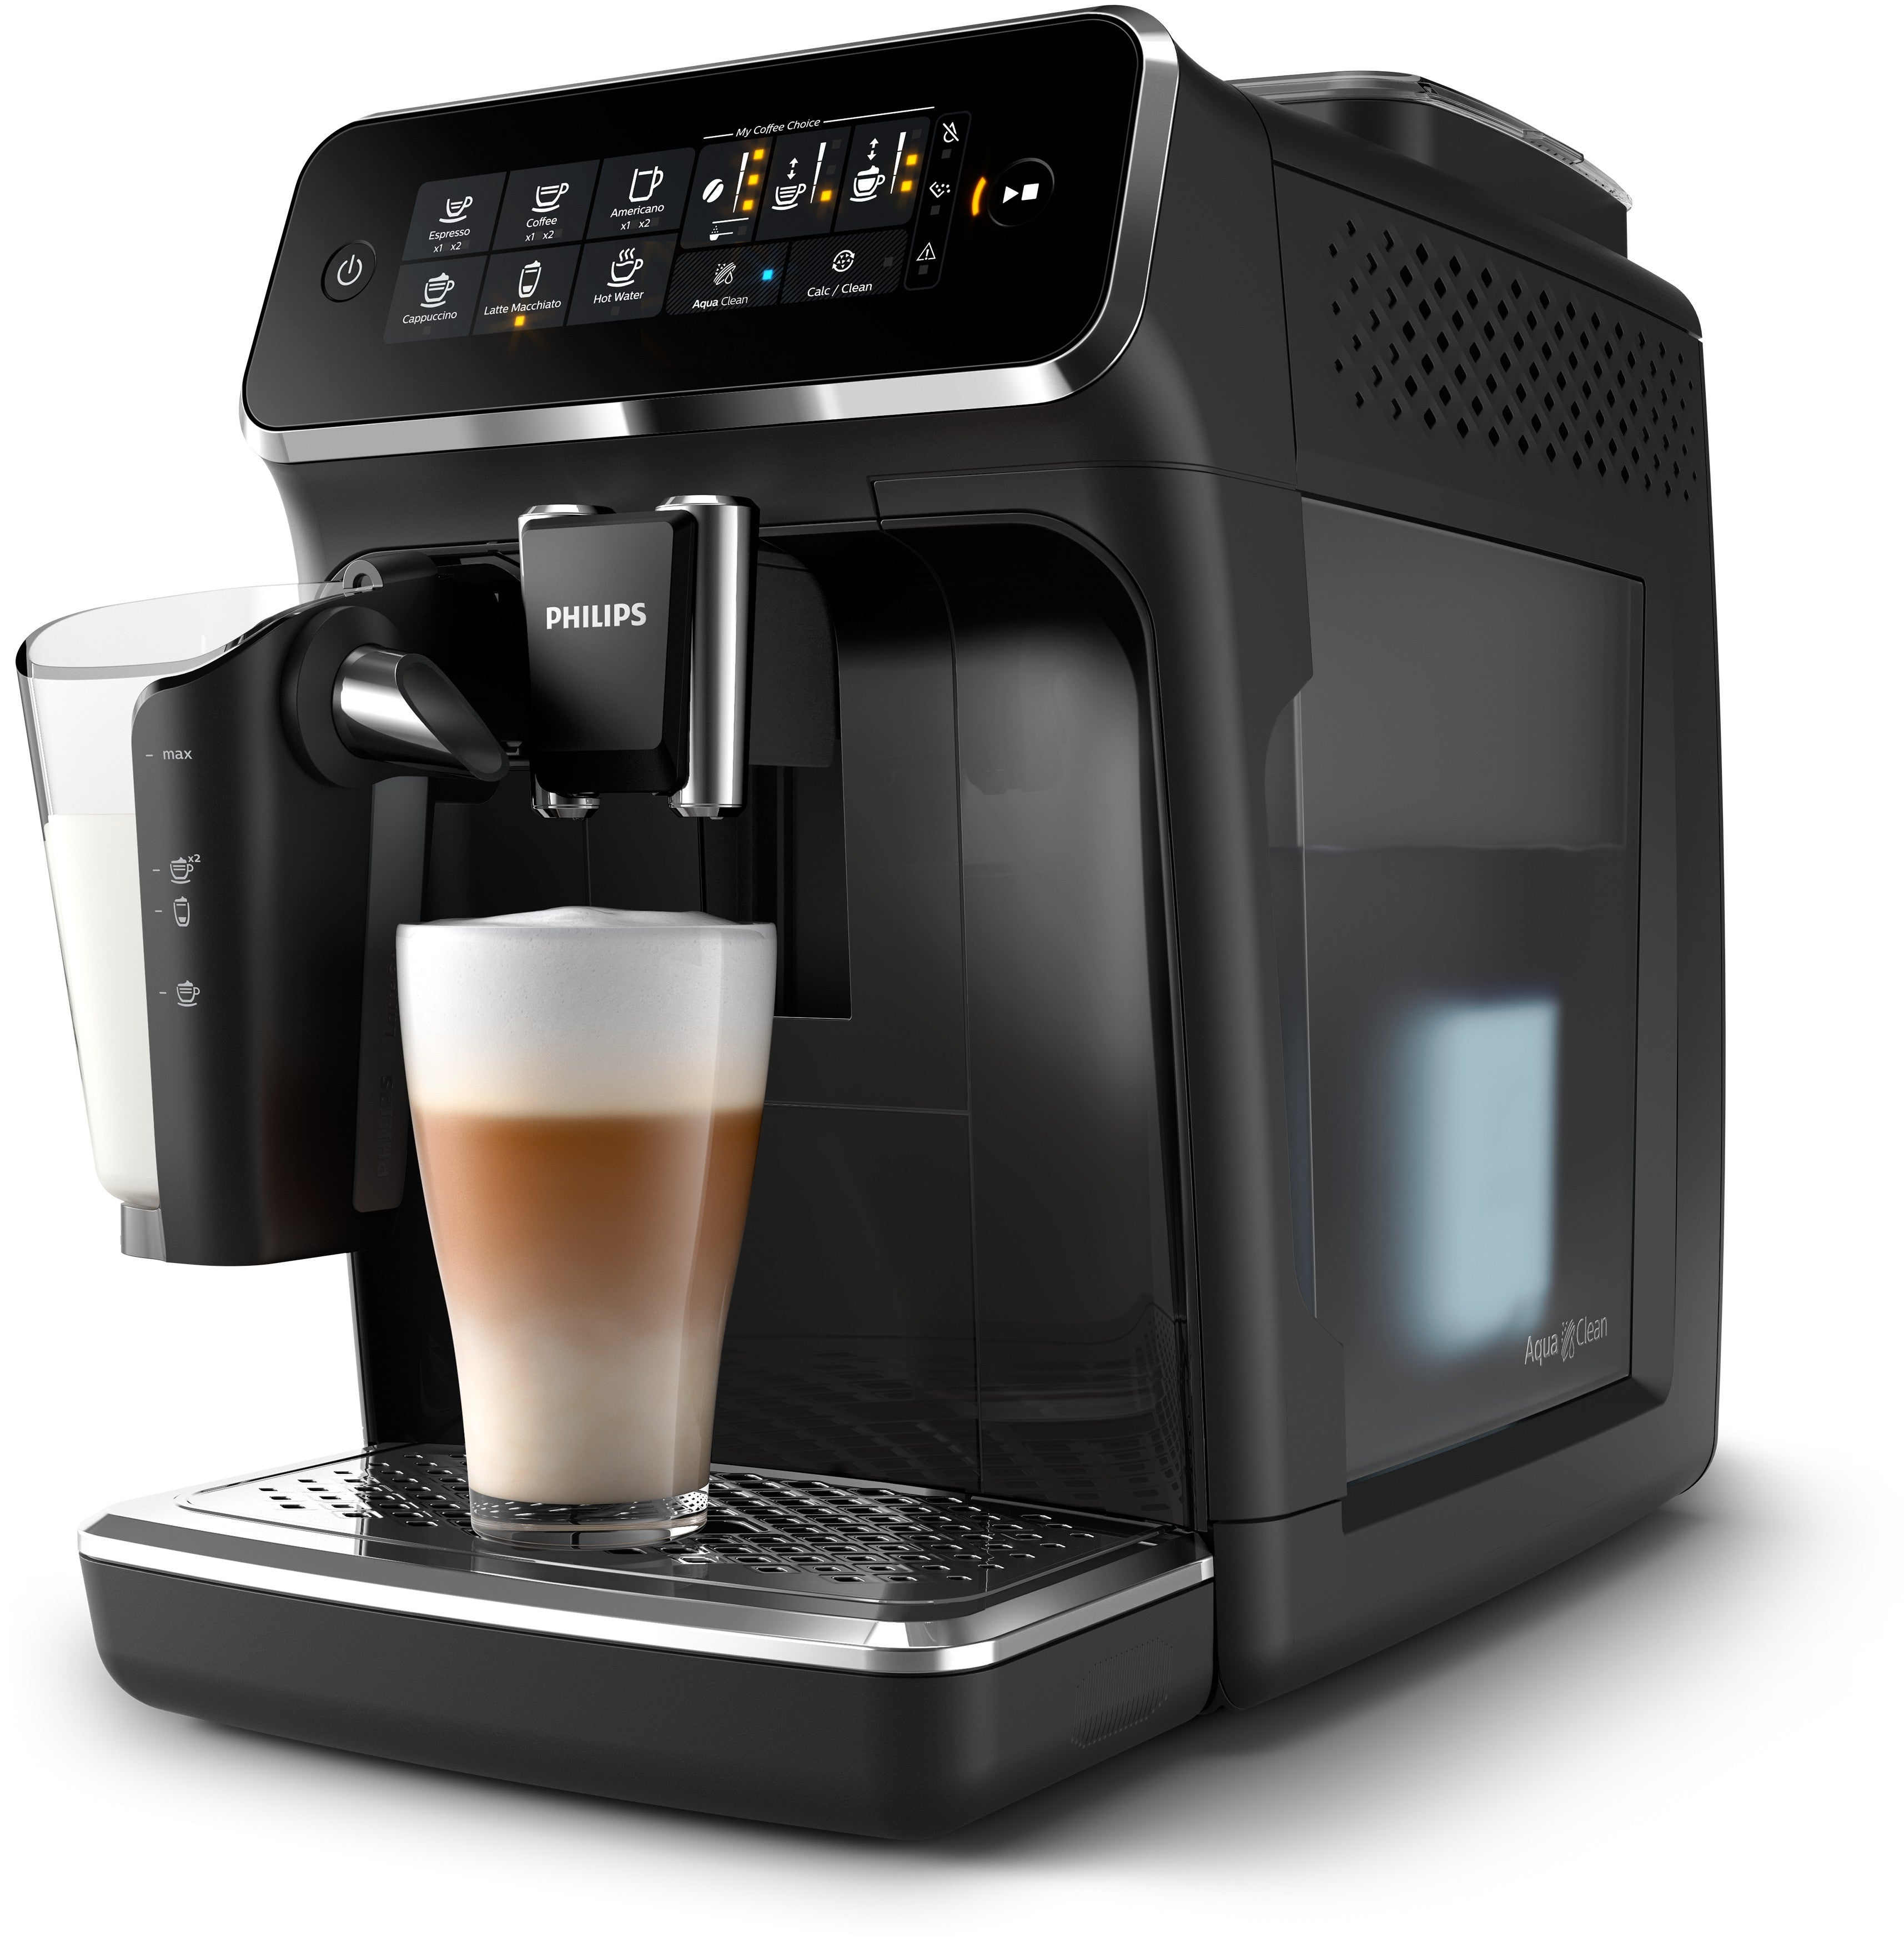 Machines à expresso et cafetières : latte, cappuccino, etc.